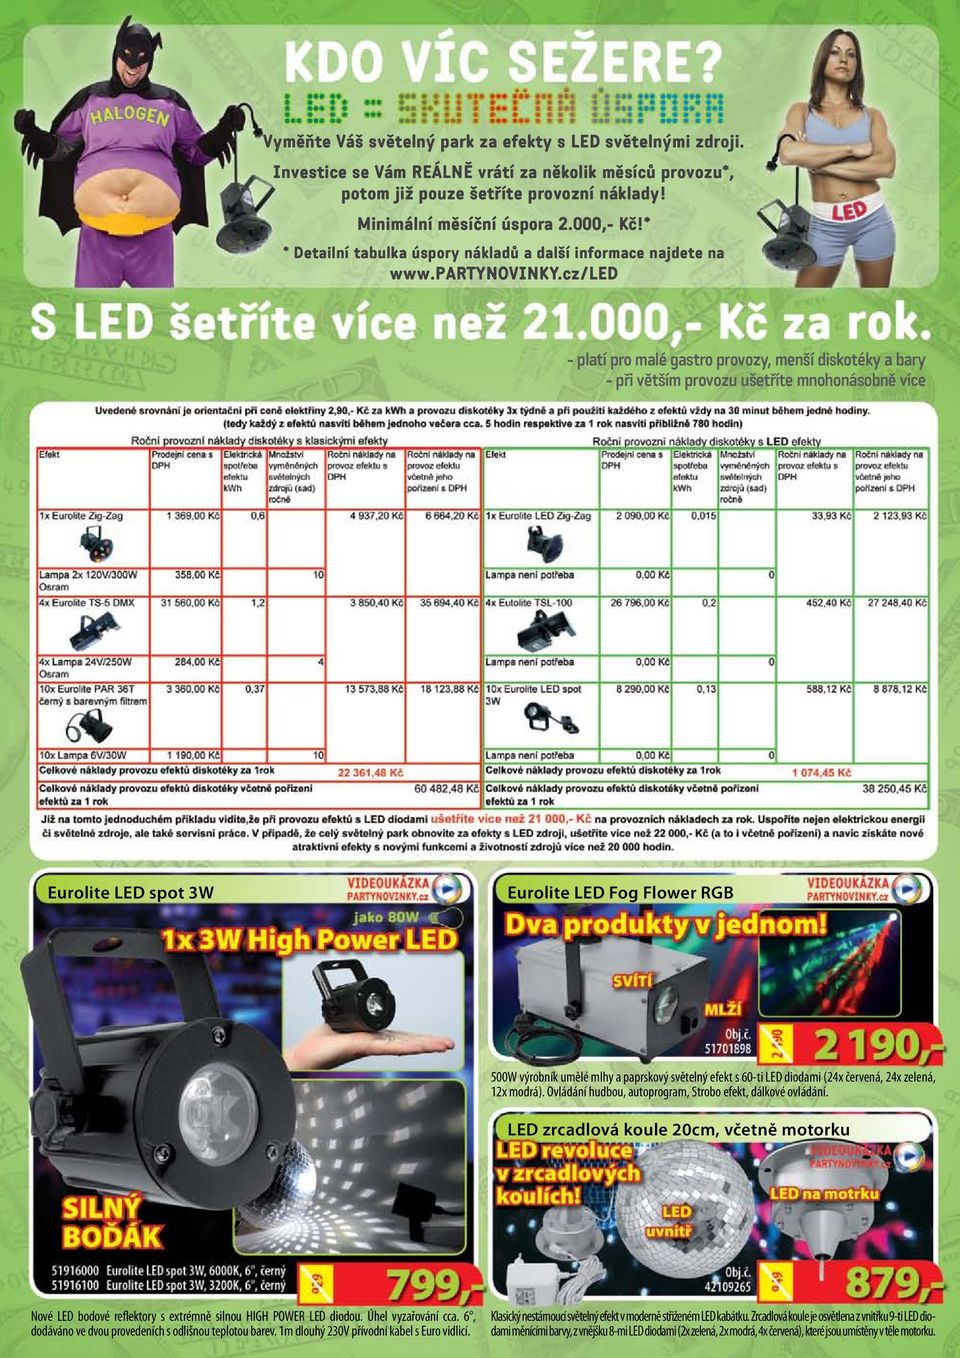 cz/led - platí pro malé gastro provozy, menší diskotéky a bary - při větším provozu ušetříte mnohonásobně více Eurolite LED spot 3W Eurolite LED Fog Flower RGB 500W výrobník umělé mlhy a paprskový